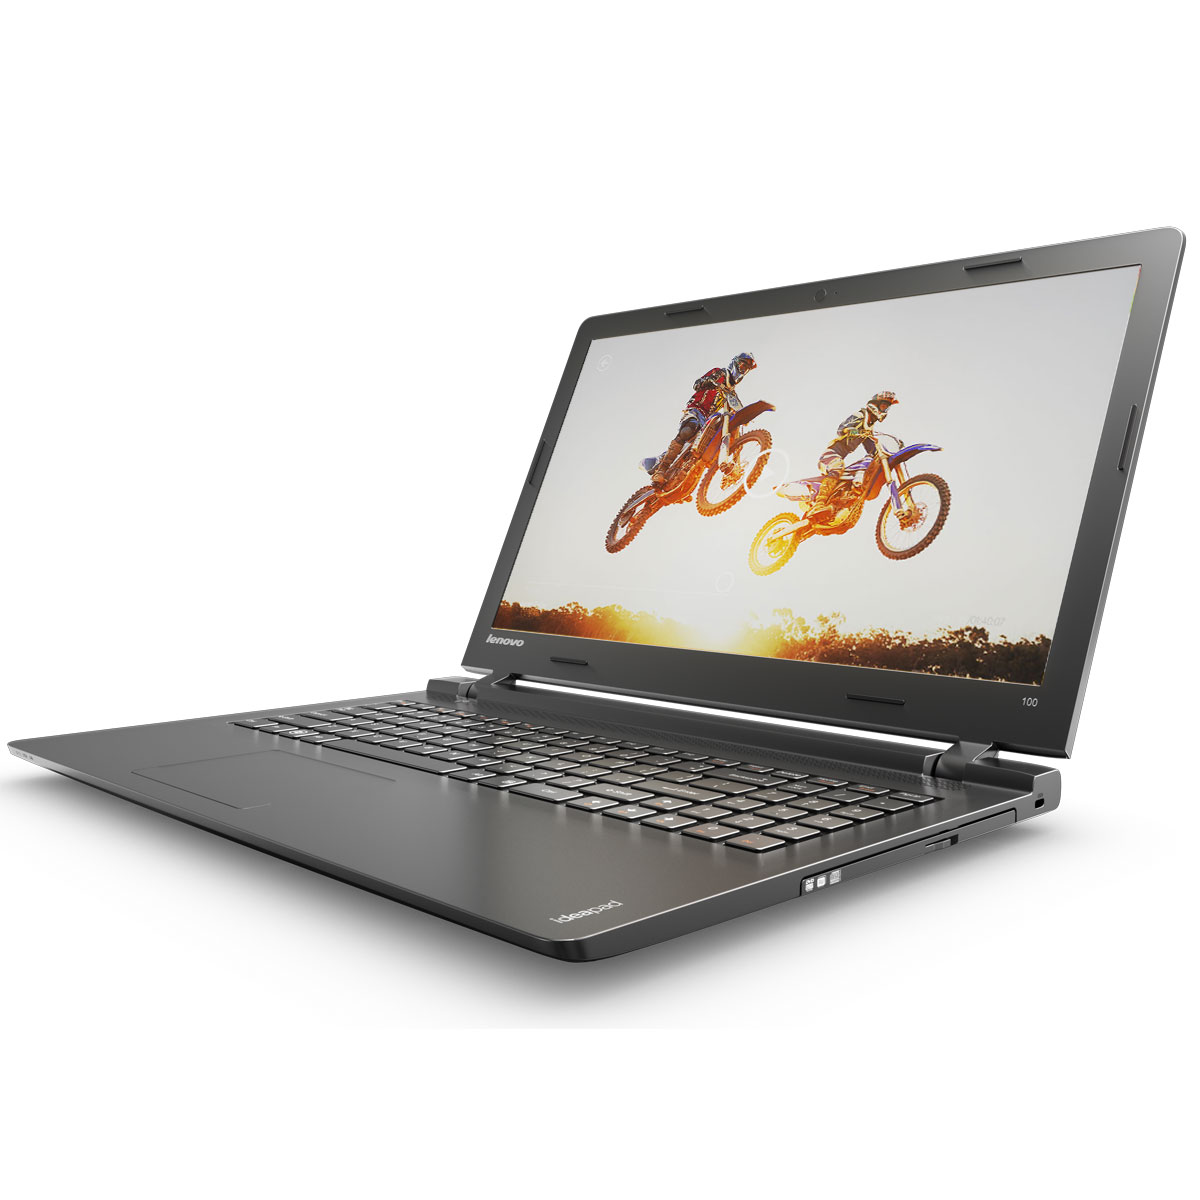 Купить Ноутбук Lenovo Ideapad 100-15iby 80mj0055rk